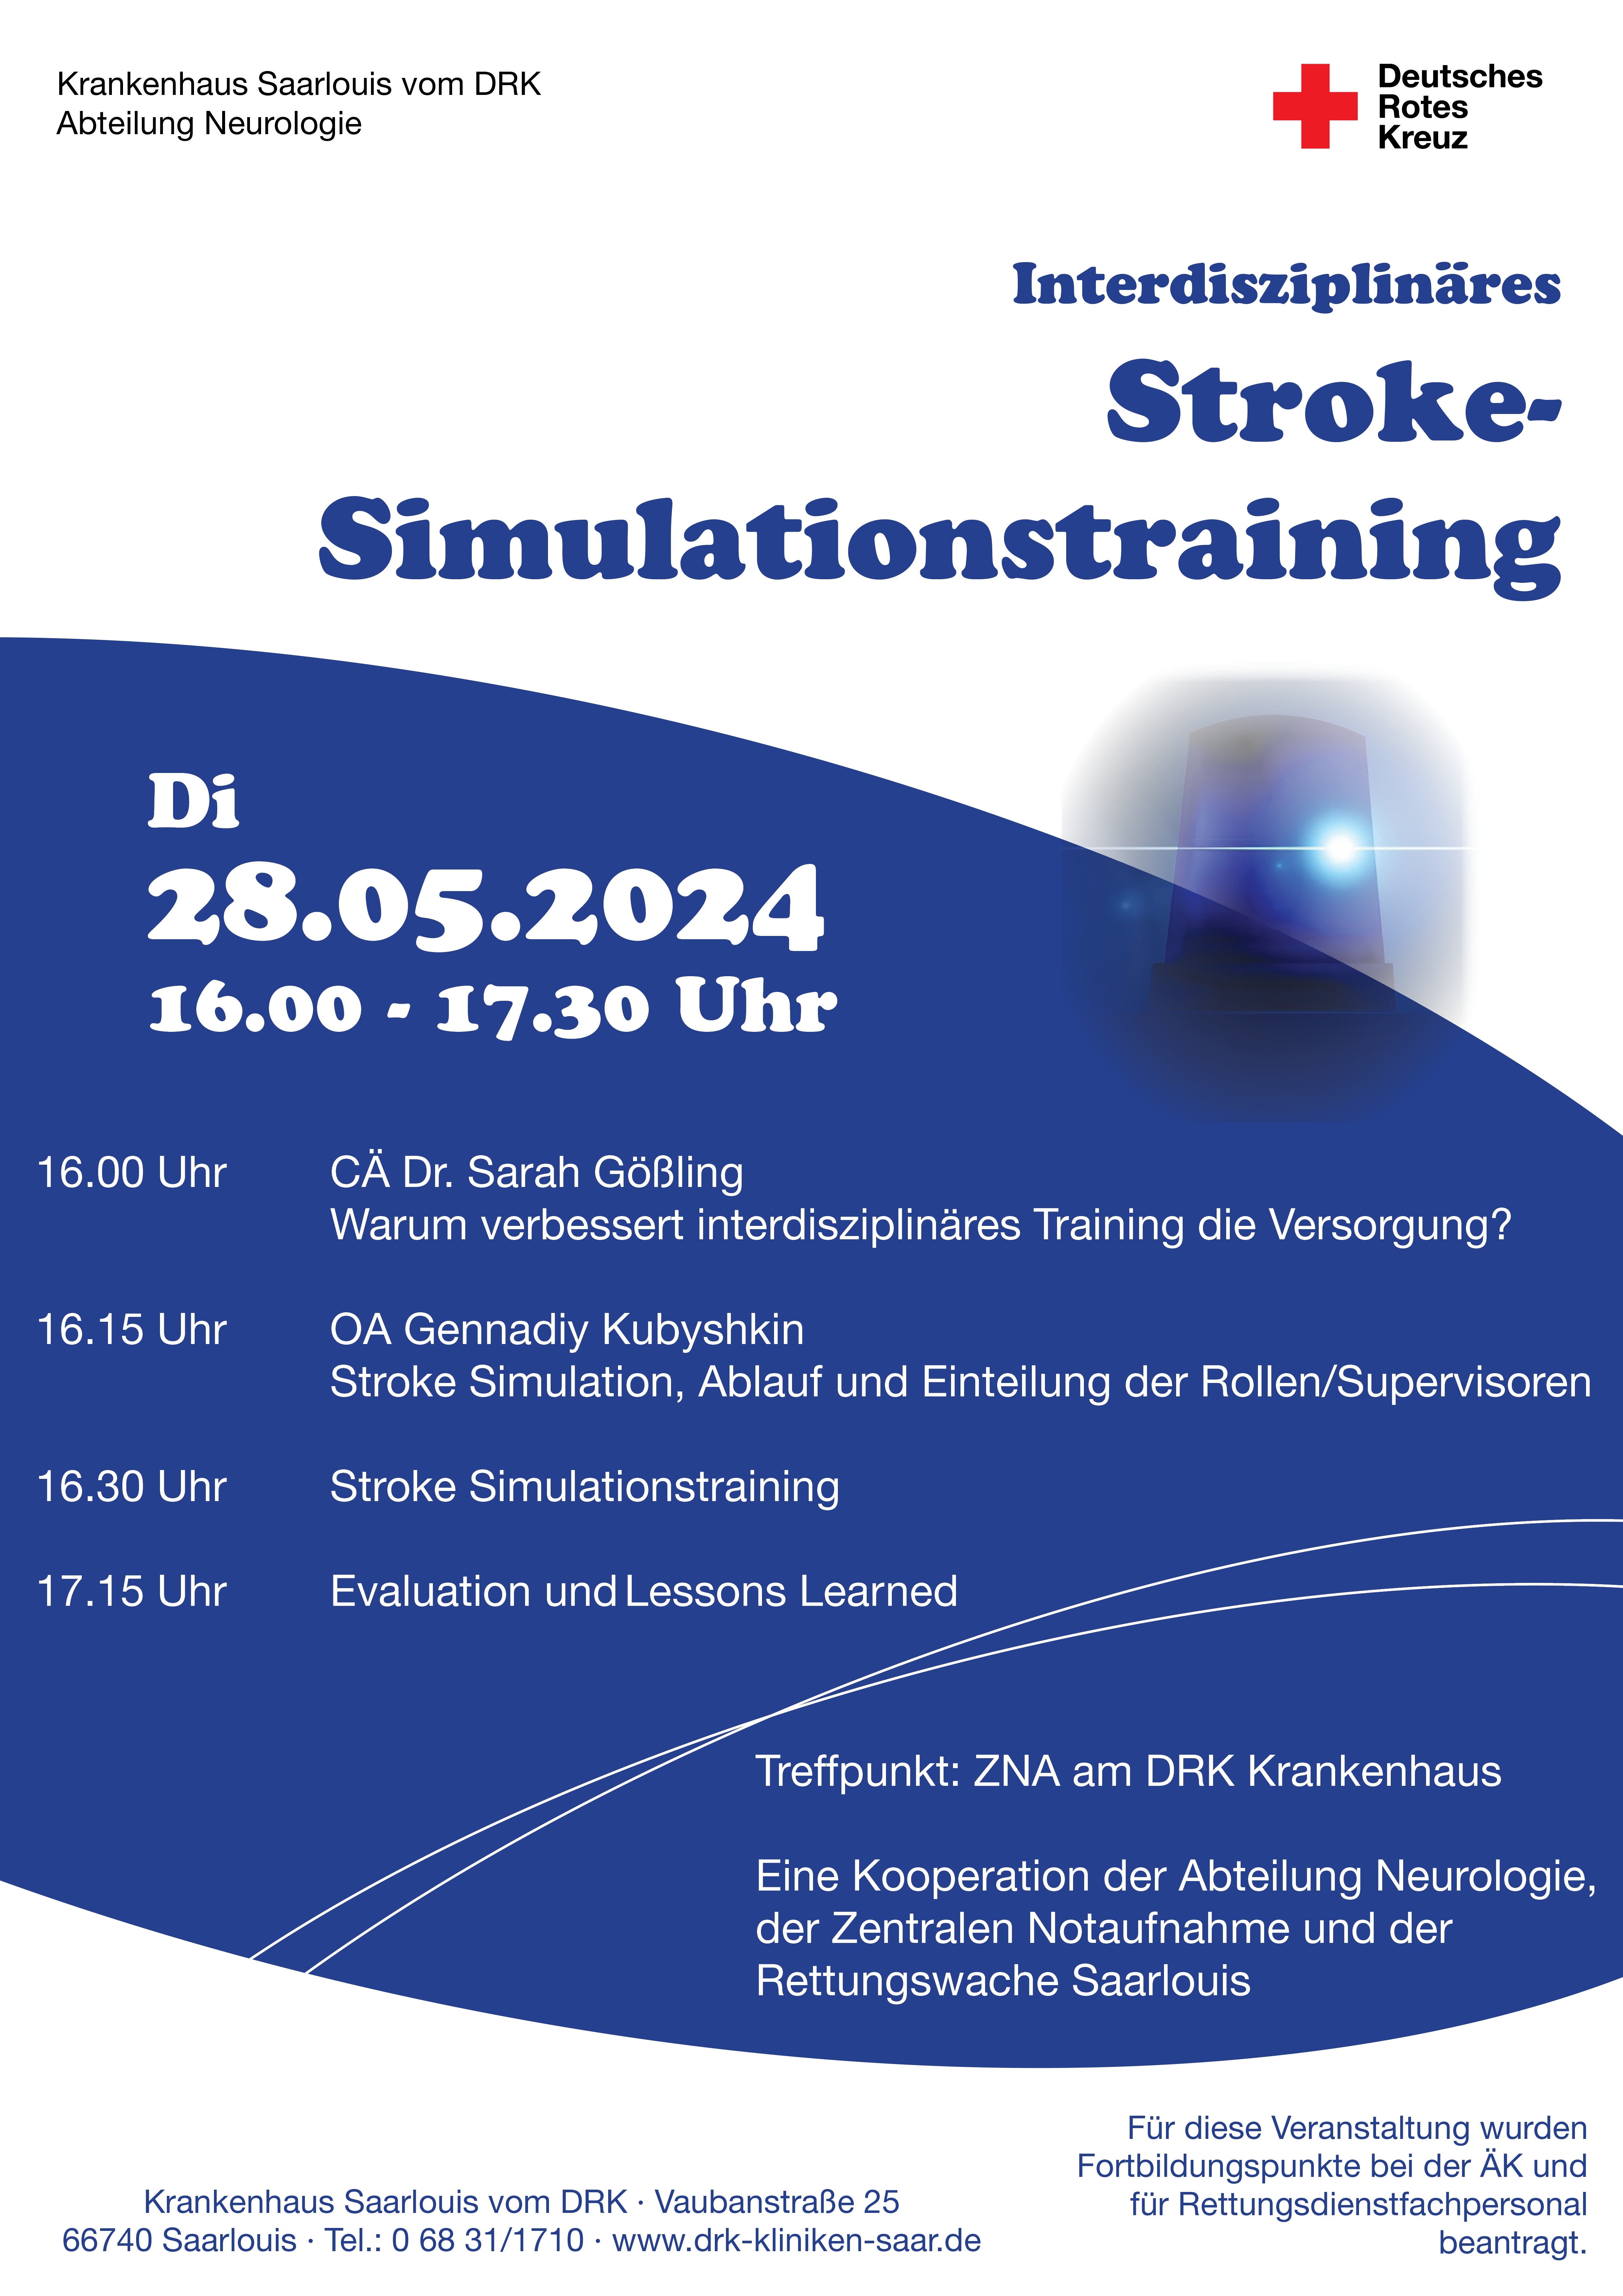 Interdisziplinäres Stroke-Simulationstraining 28.05.2024